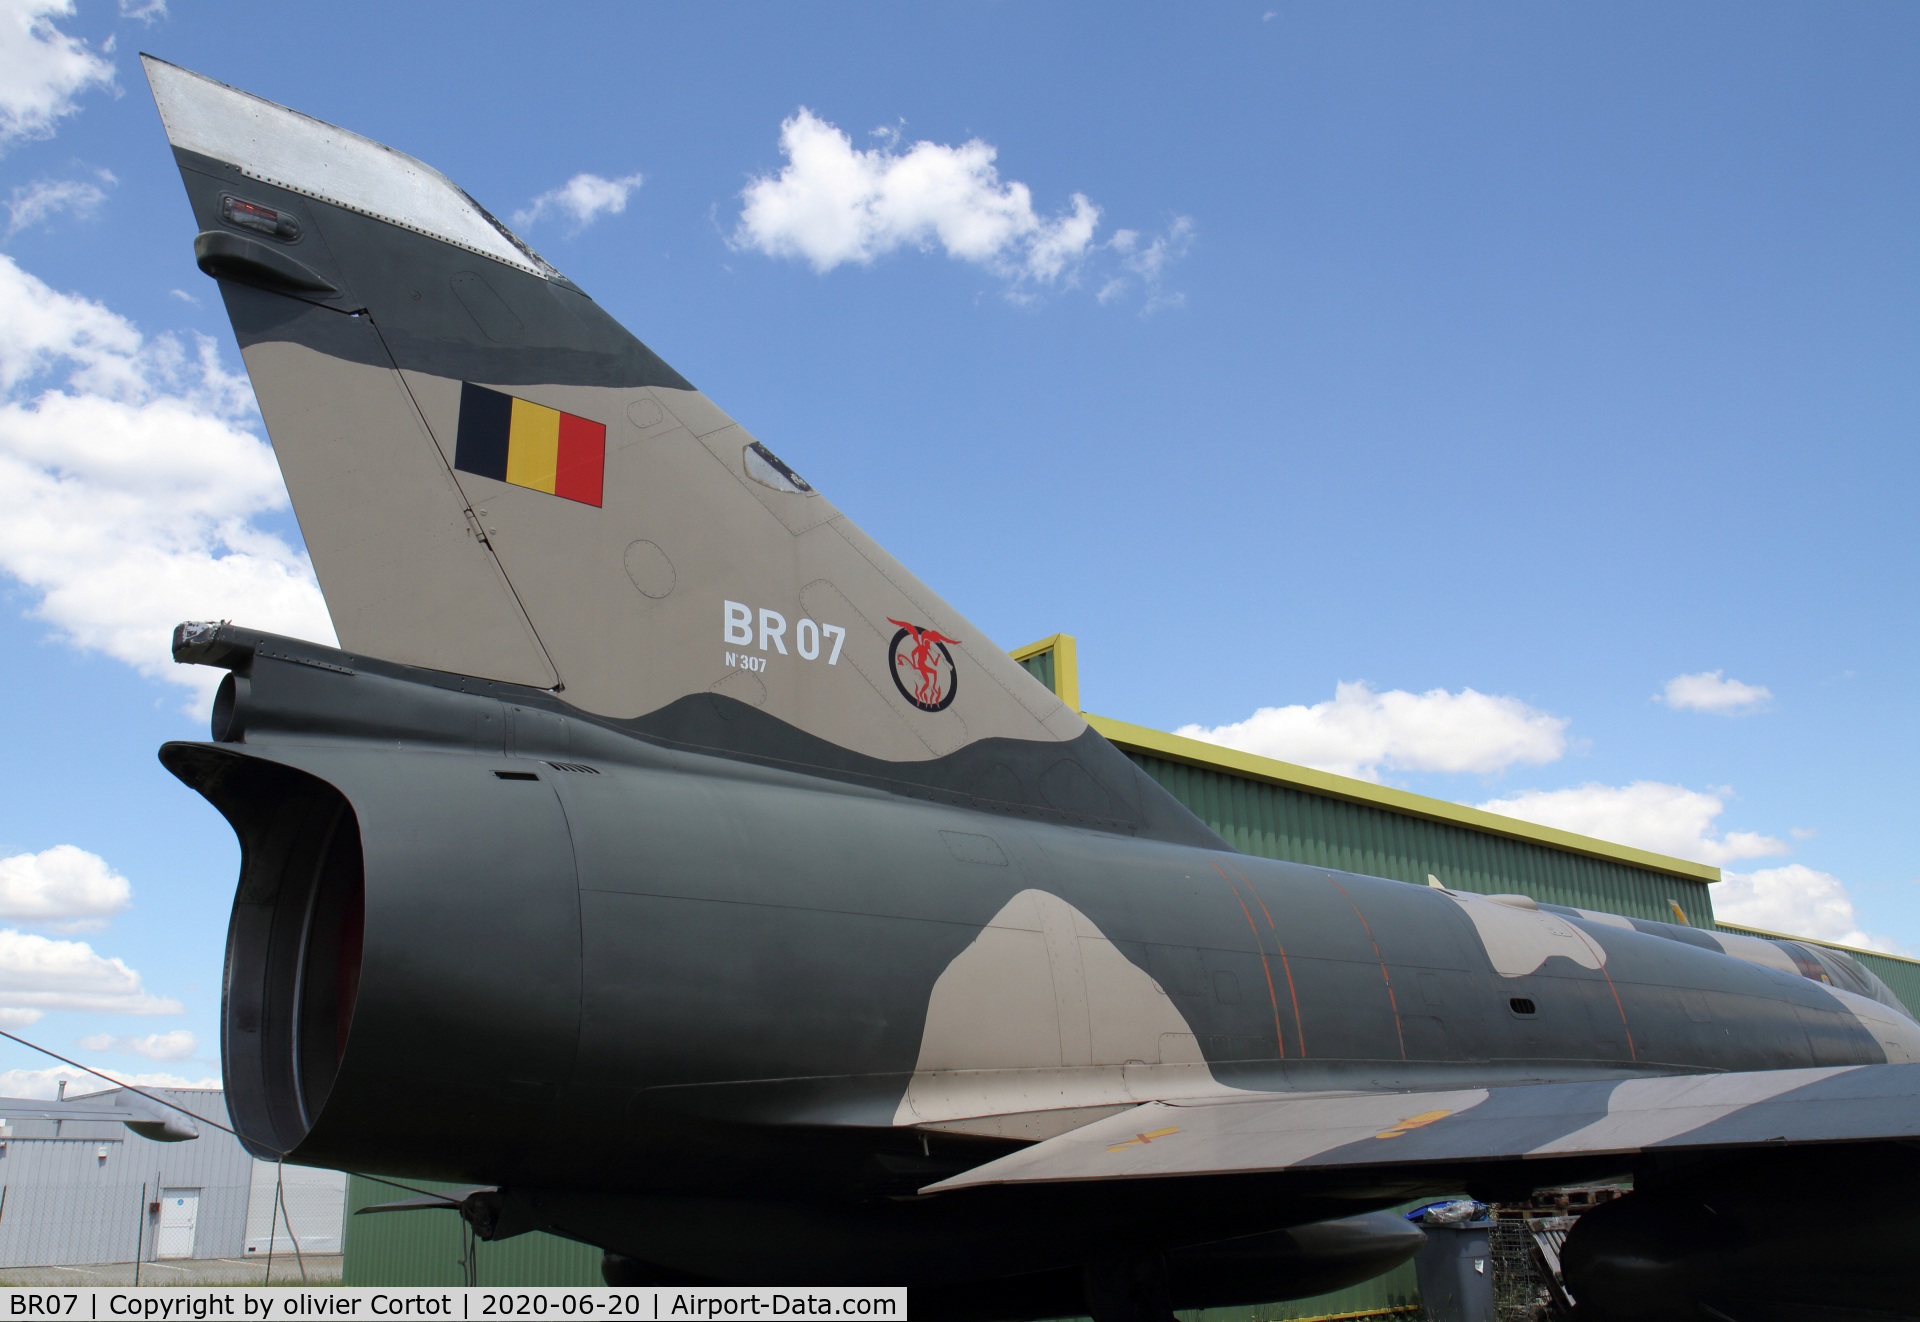 BR07, Dassault Mirage 5BR C/N 307, nicely preserved Mirage V